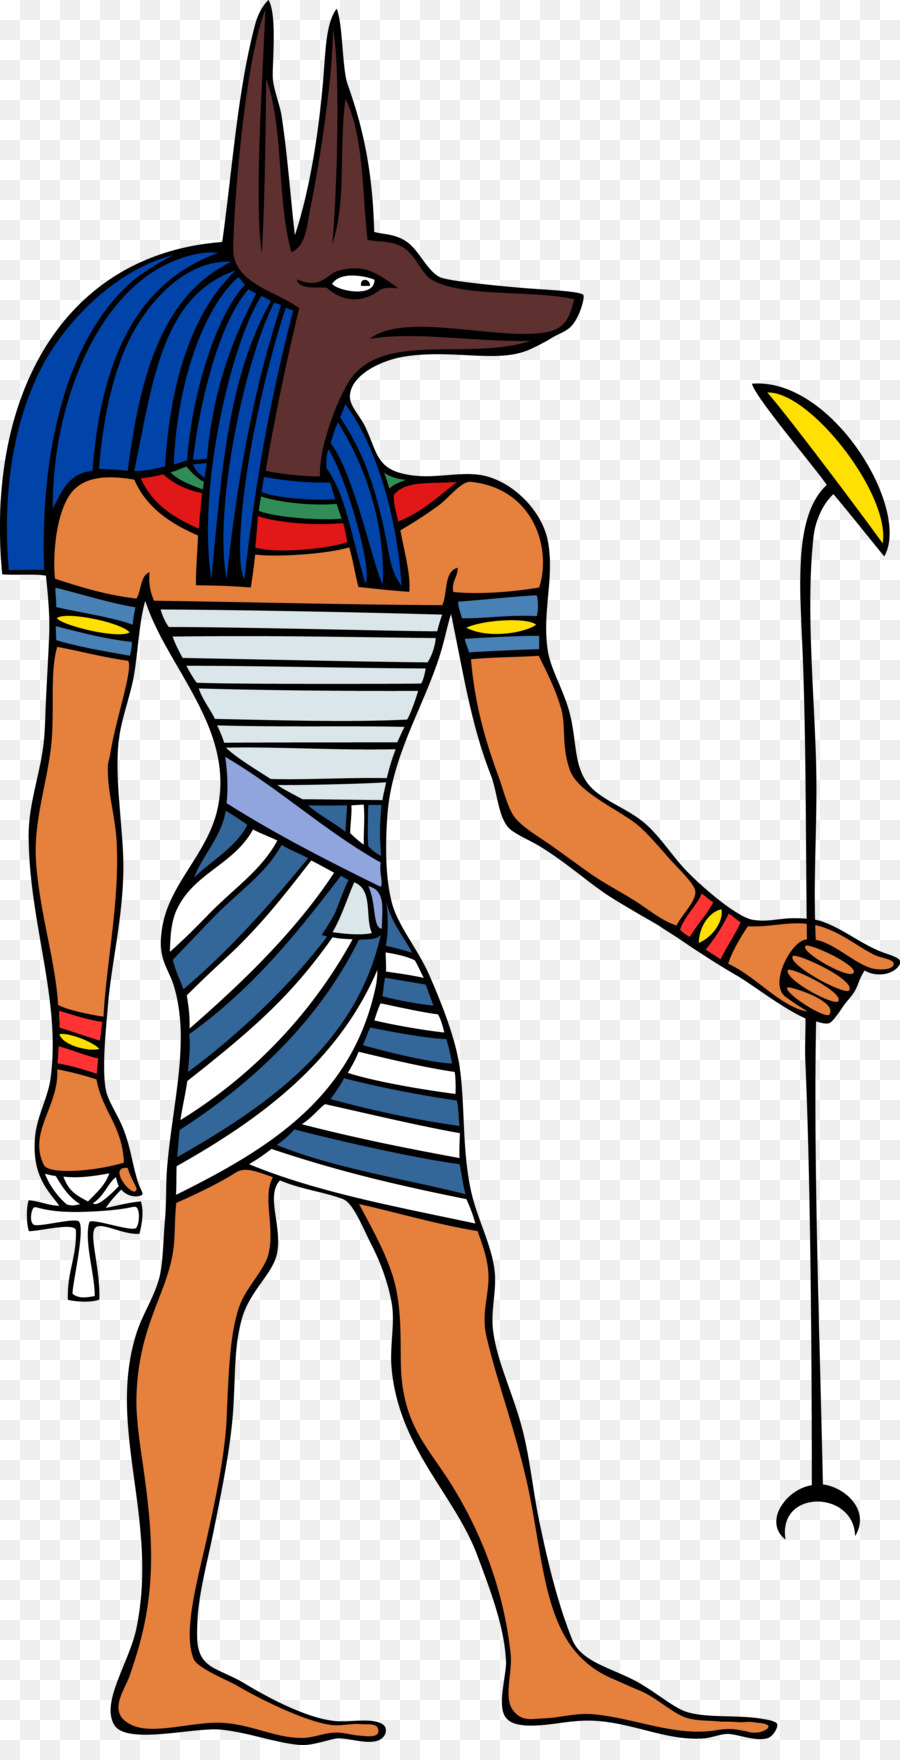 Alten ägyptischen Gottheiten Anubis-Gottheit der Alten ägyptischen religion - Anubis